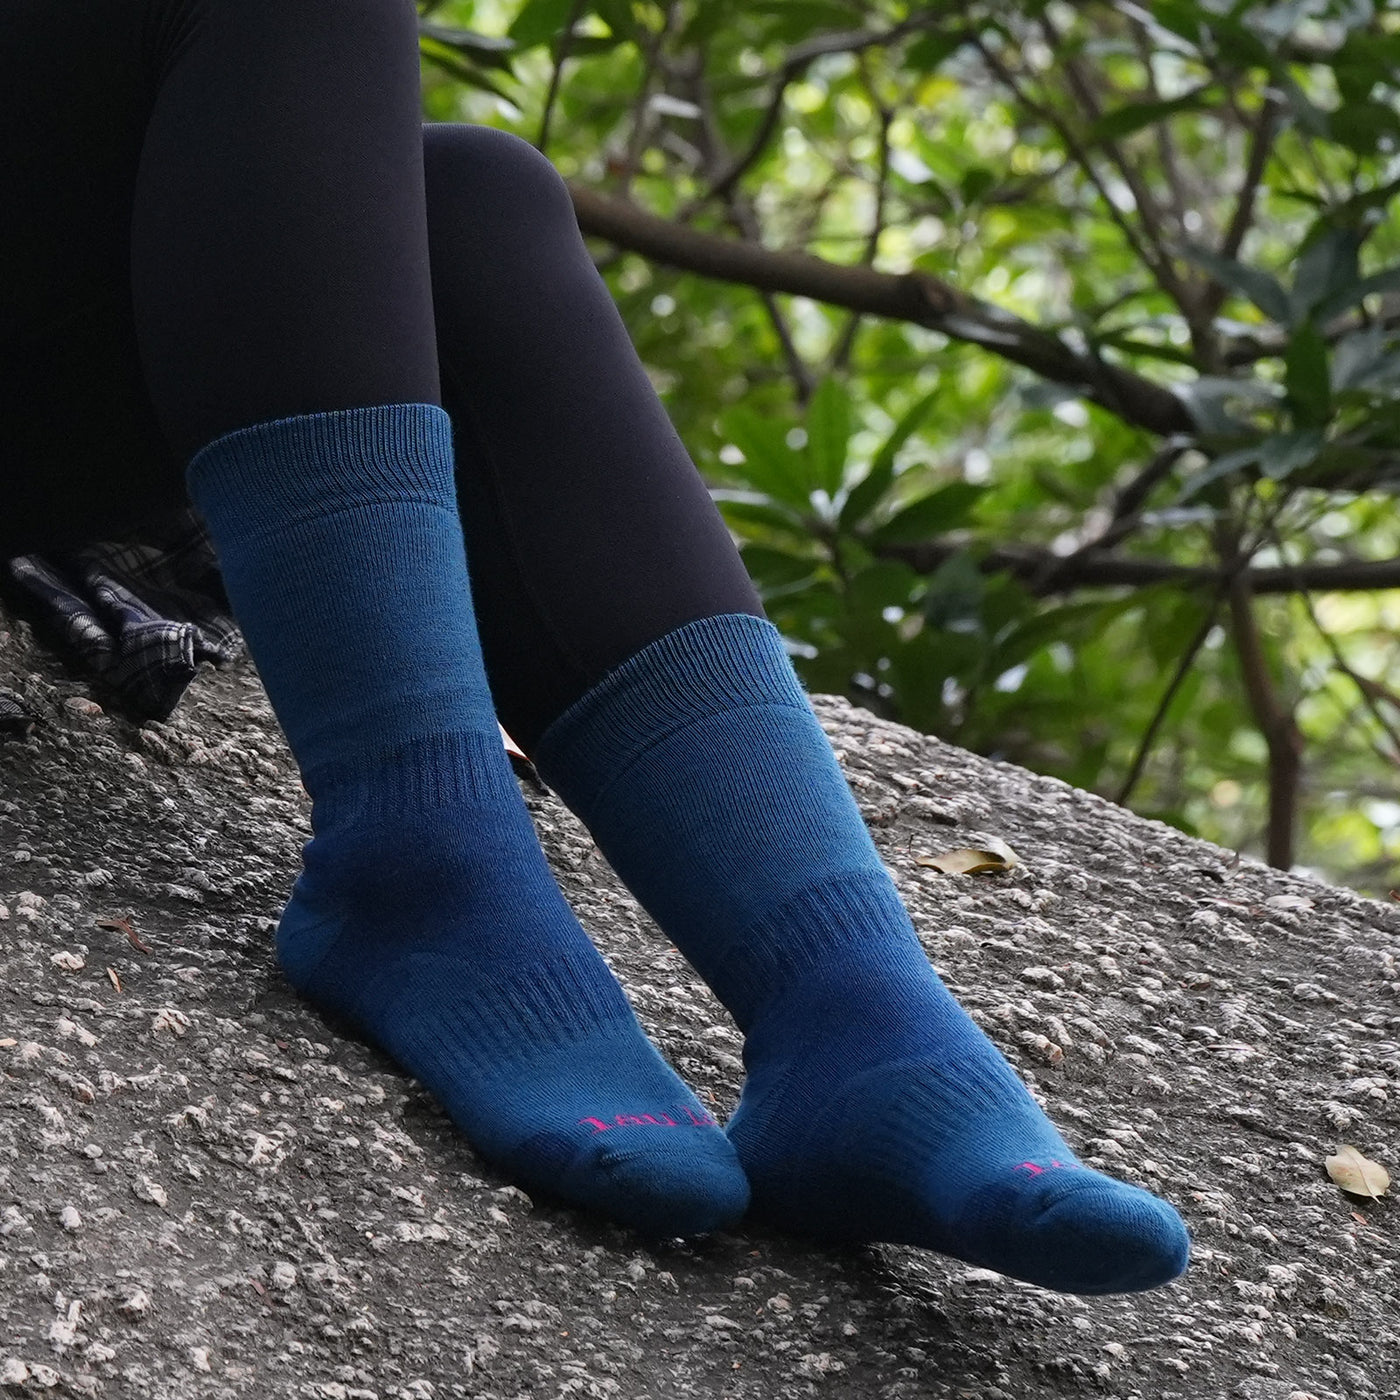 2 Pairs High Quality Merino Wool women's Hiking Socks, Gift Set